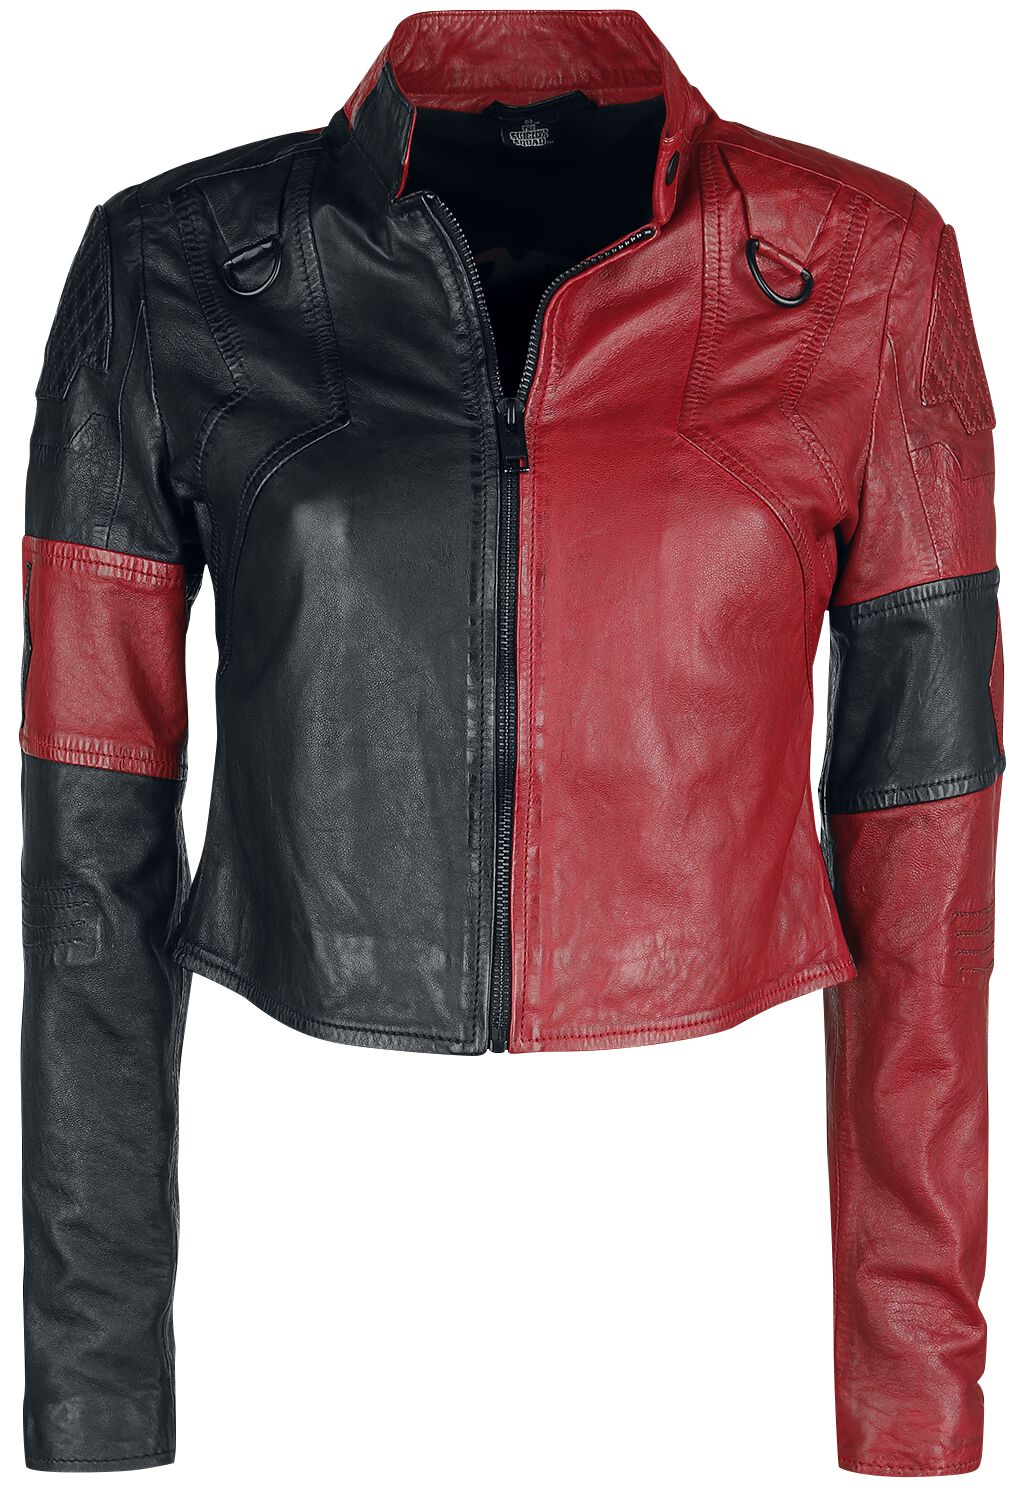 Veste en cuir de Suicide Squad - Suicide Squad 2 - Harley Quinn - S à XXL - pour Femme - noir/rouge